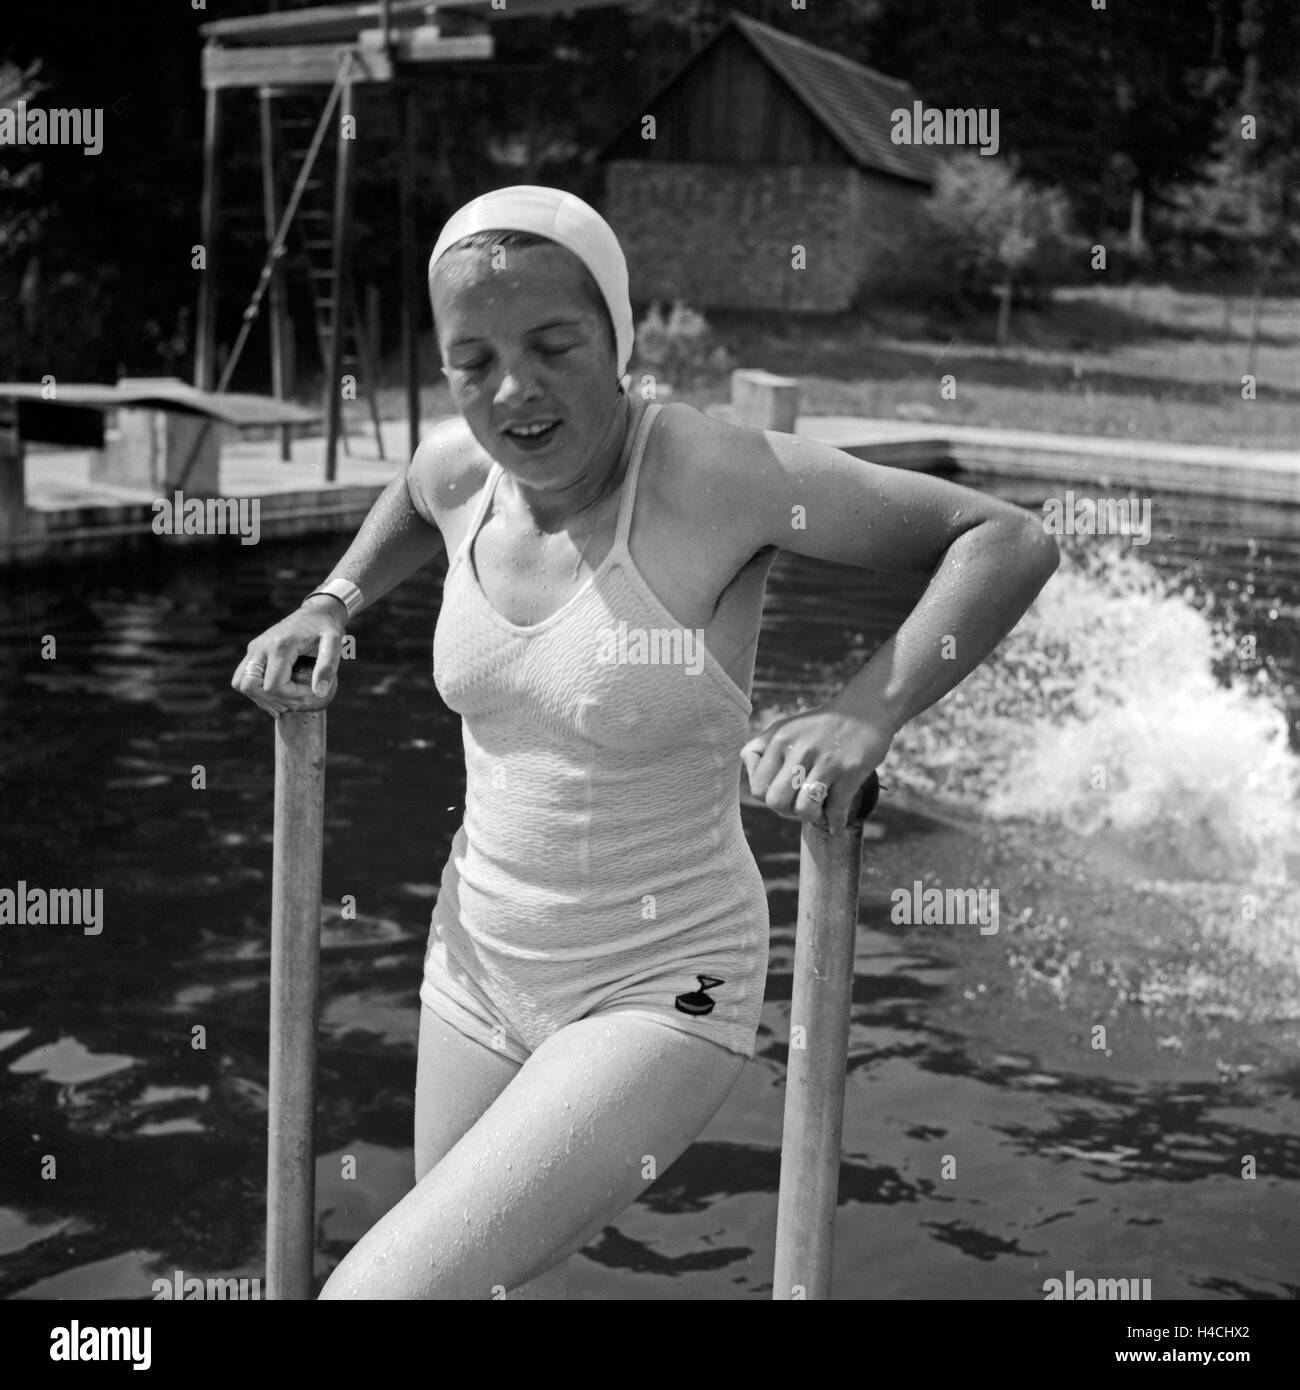 Eine junge Frau kommt nach einem Sprung ins Wasser wieder aus dem Becken, Deutschland 1930er Jahre. After a jumo in the pool a woman climbing out of the water, Germany 1930s. Stock Photo